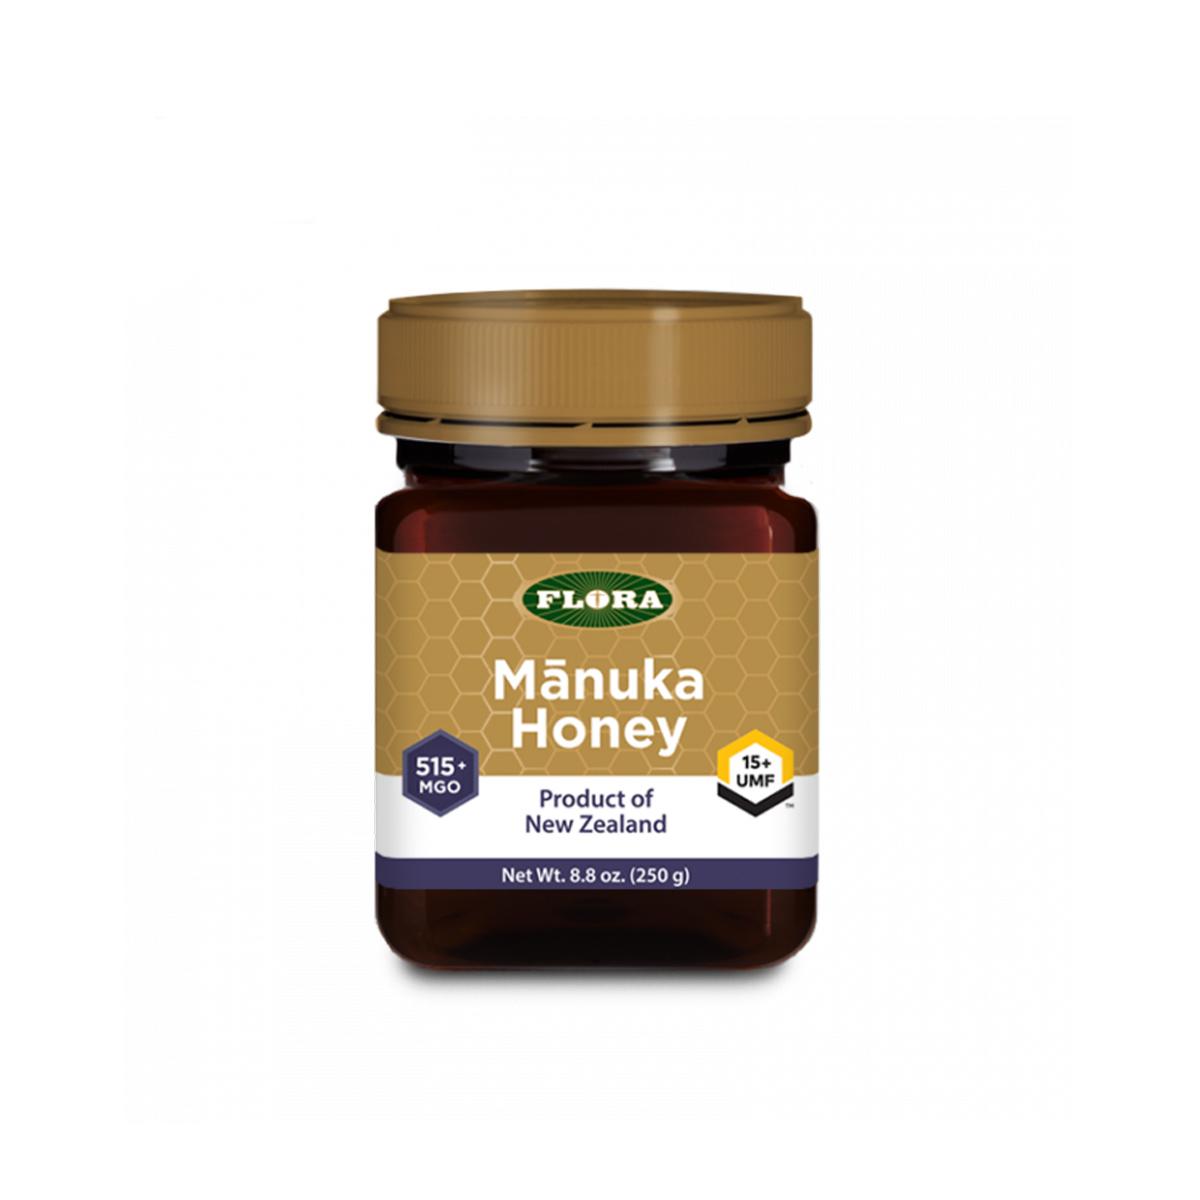 Primary image of Manuka Honey MGO 515+/15+ UMF